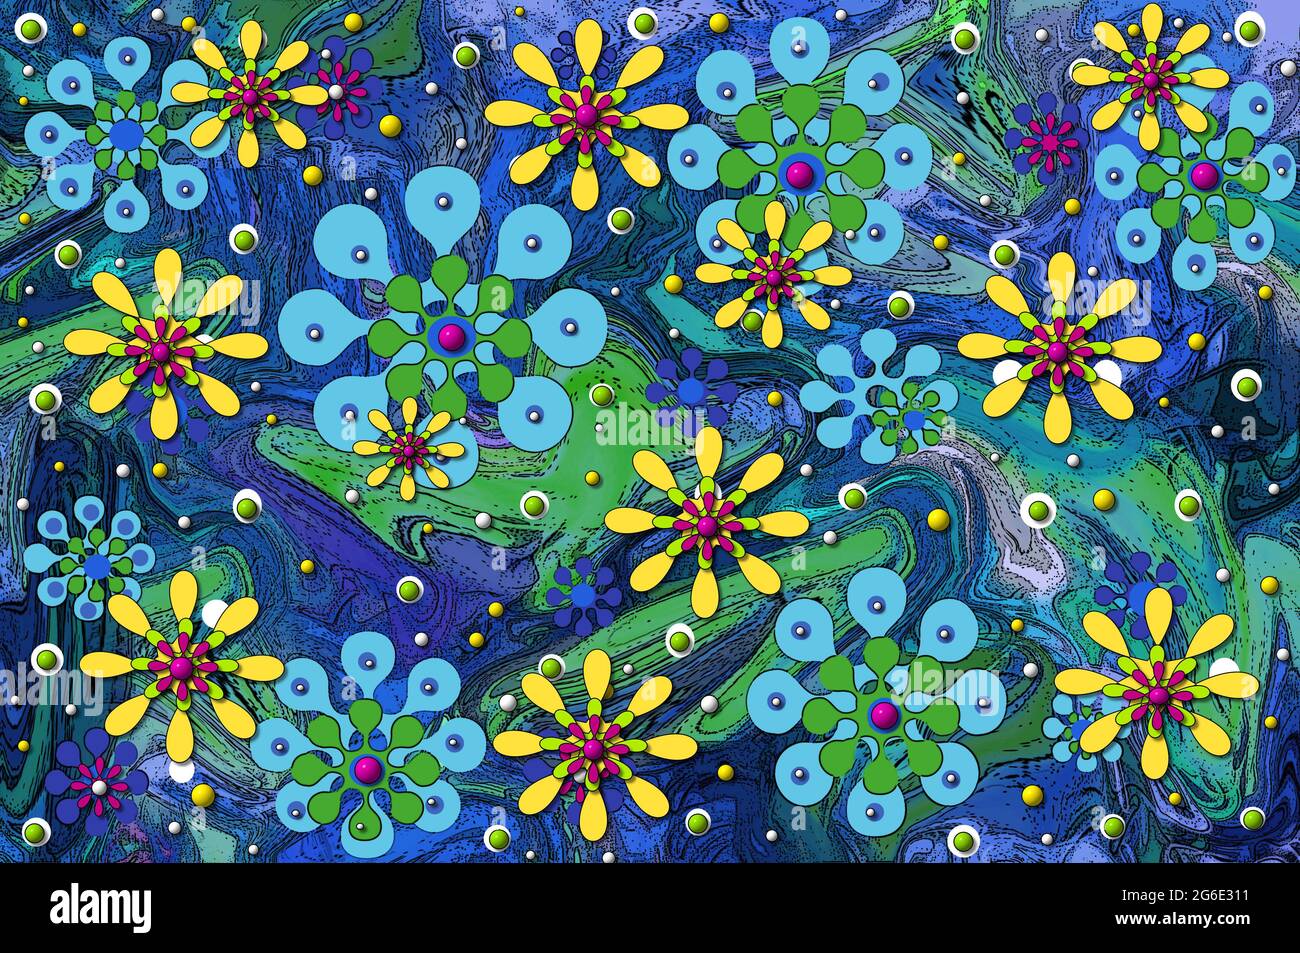 Hippie inspirado imagen abstracta del poder de la flor se ha ido salvaje.  El movimiento se muestra en el chorro de remolinos de color azul y verde.  Formas de flores de viaje